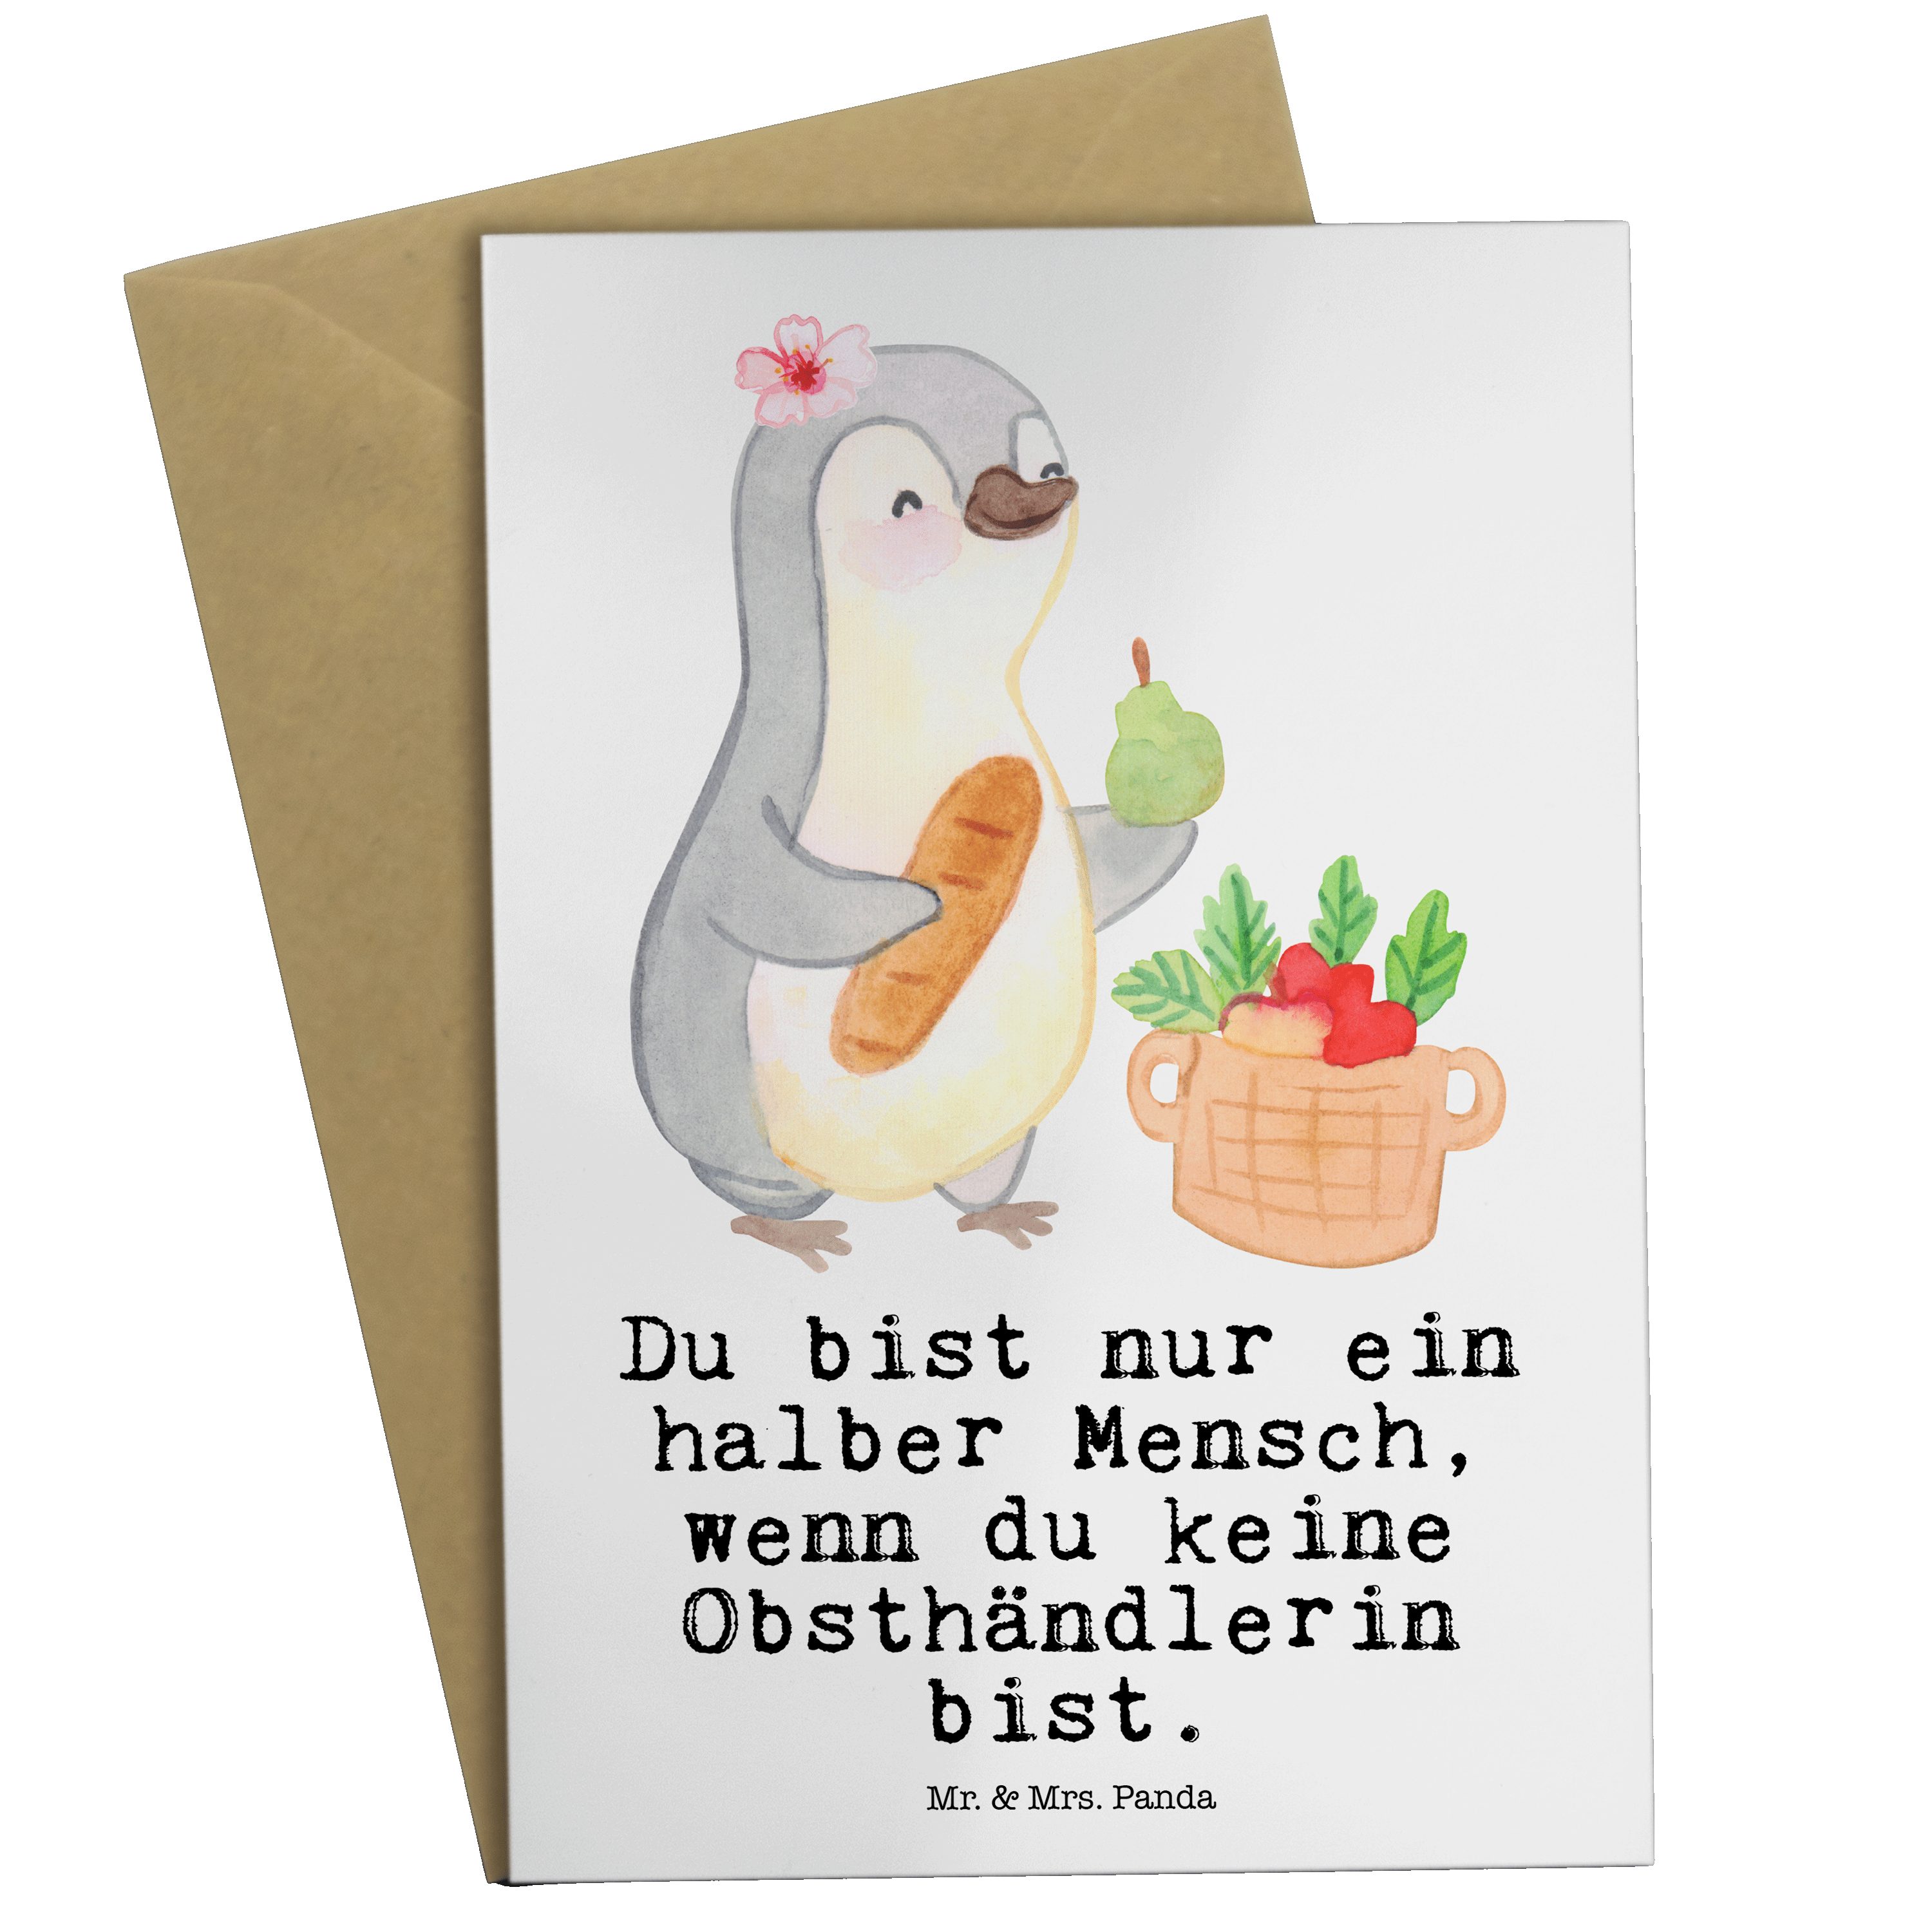 Mr. & Mrs. Panda Grußkarte Obsthändlerin mit Herz - Weiß - Geschenk, Glückwunschkarte, Abschied